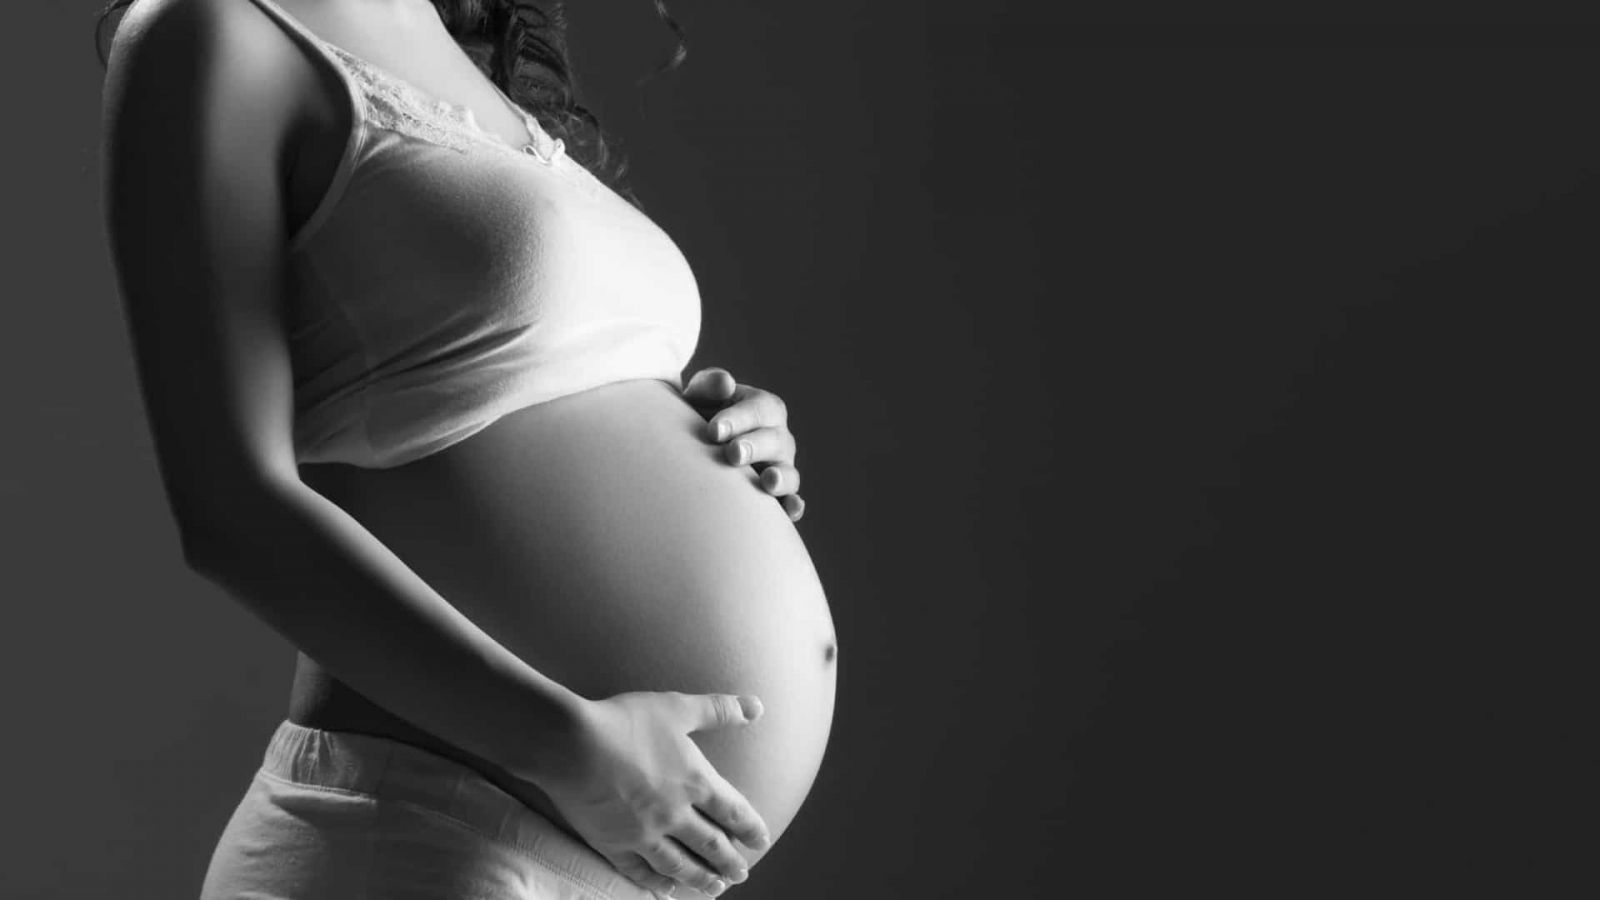 VOCÊ SABIA? Asma, depressão e genética podem contribuir para aborto espontâneo - News Rondônia